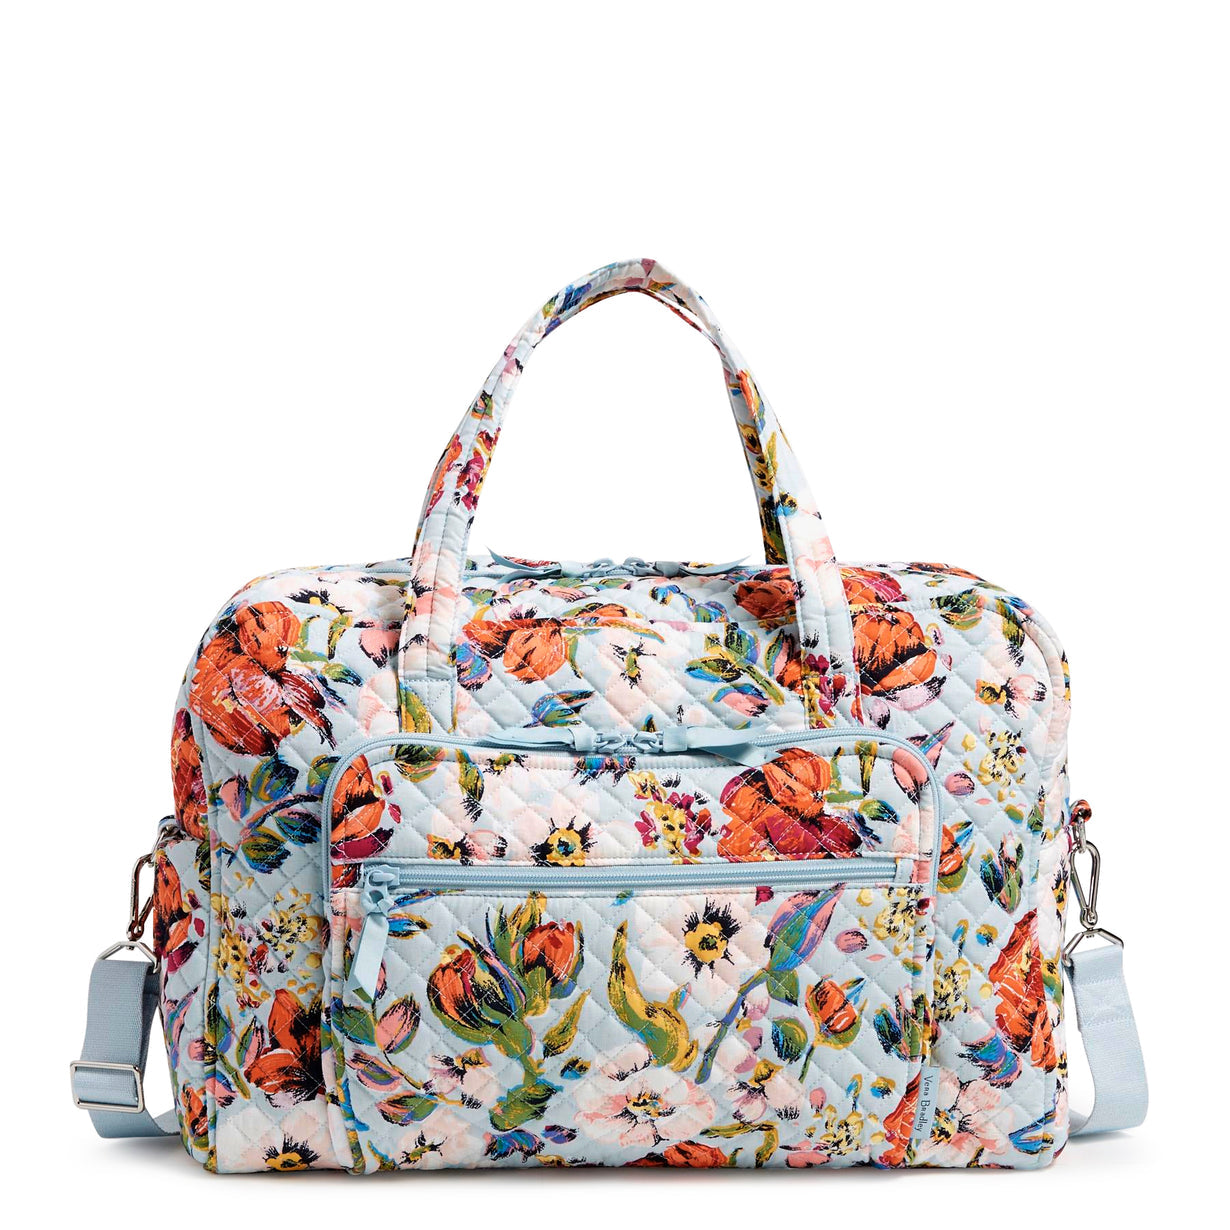 Vera Bradley Weekender Travel Bag in Sea Air Floral pattern, full front view.